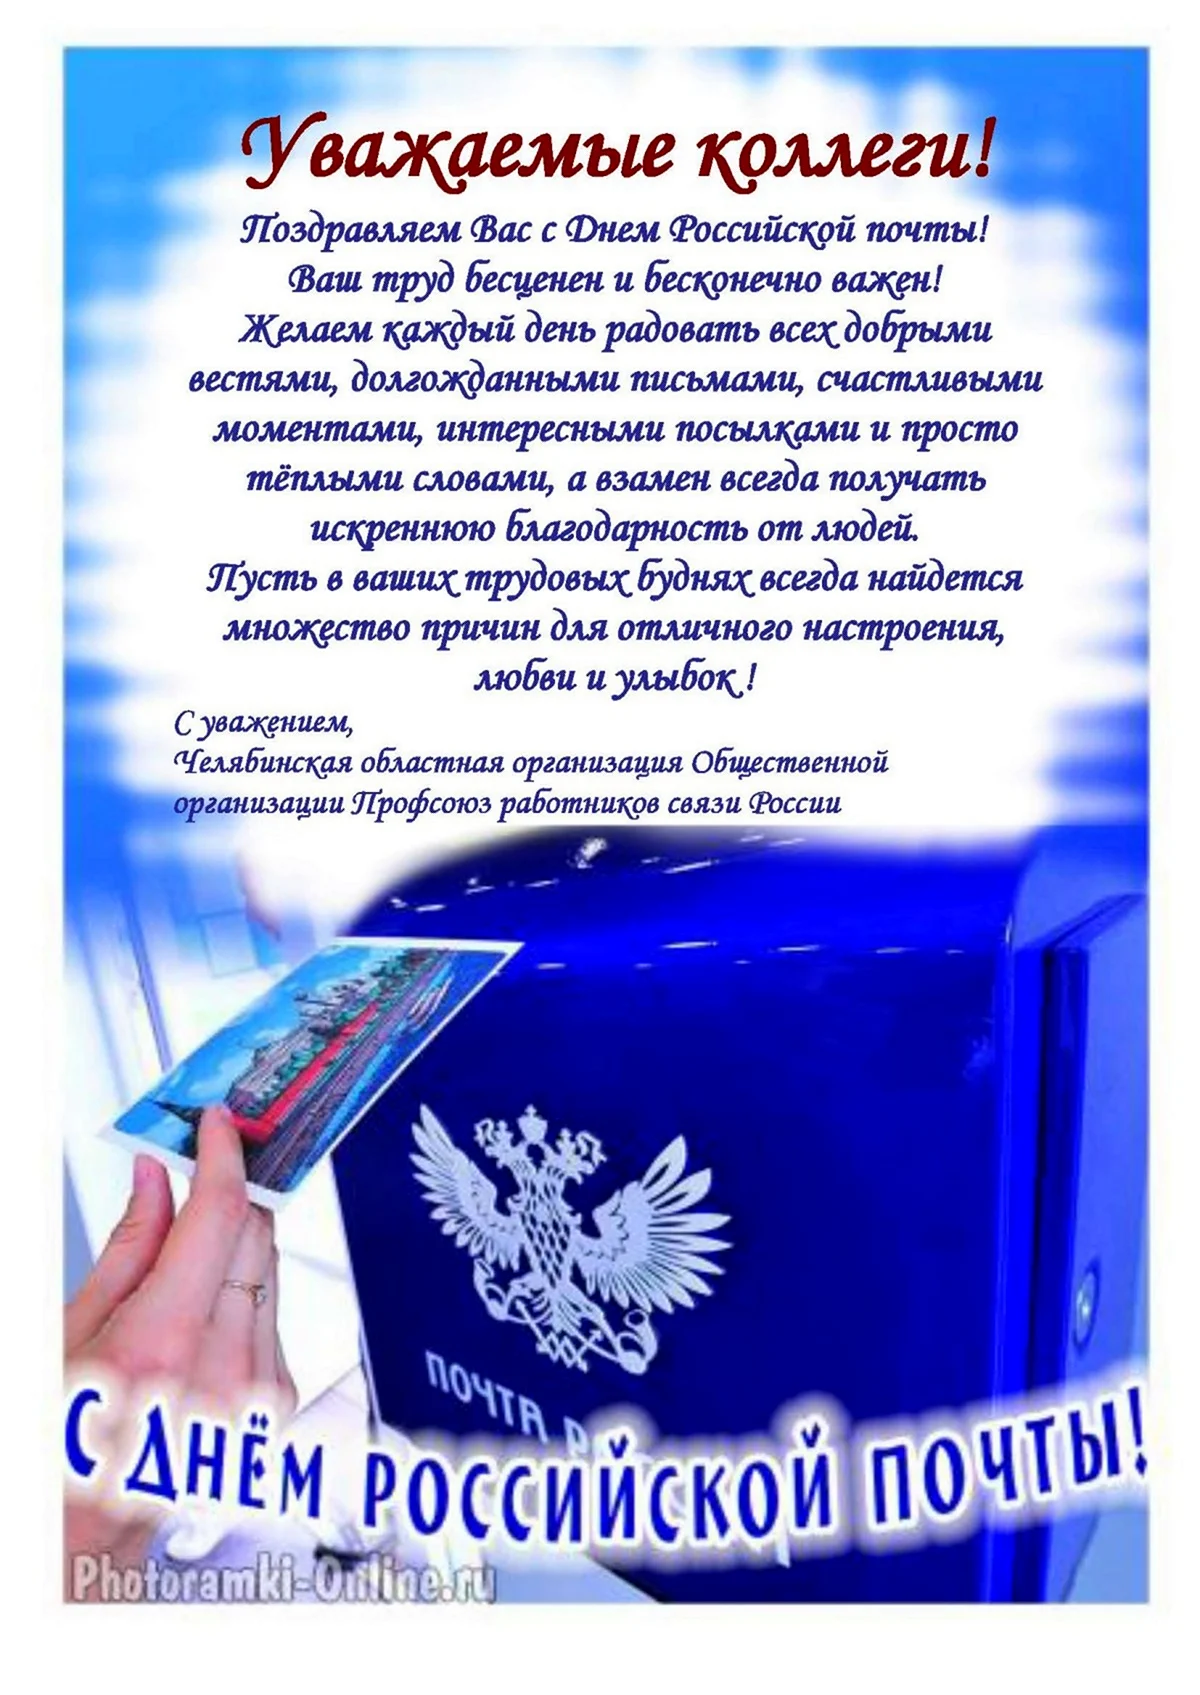 Поздравление с днем Российской почты. Красивая картинка